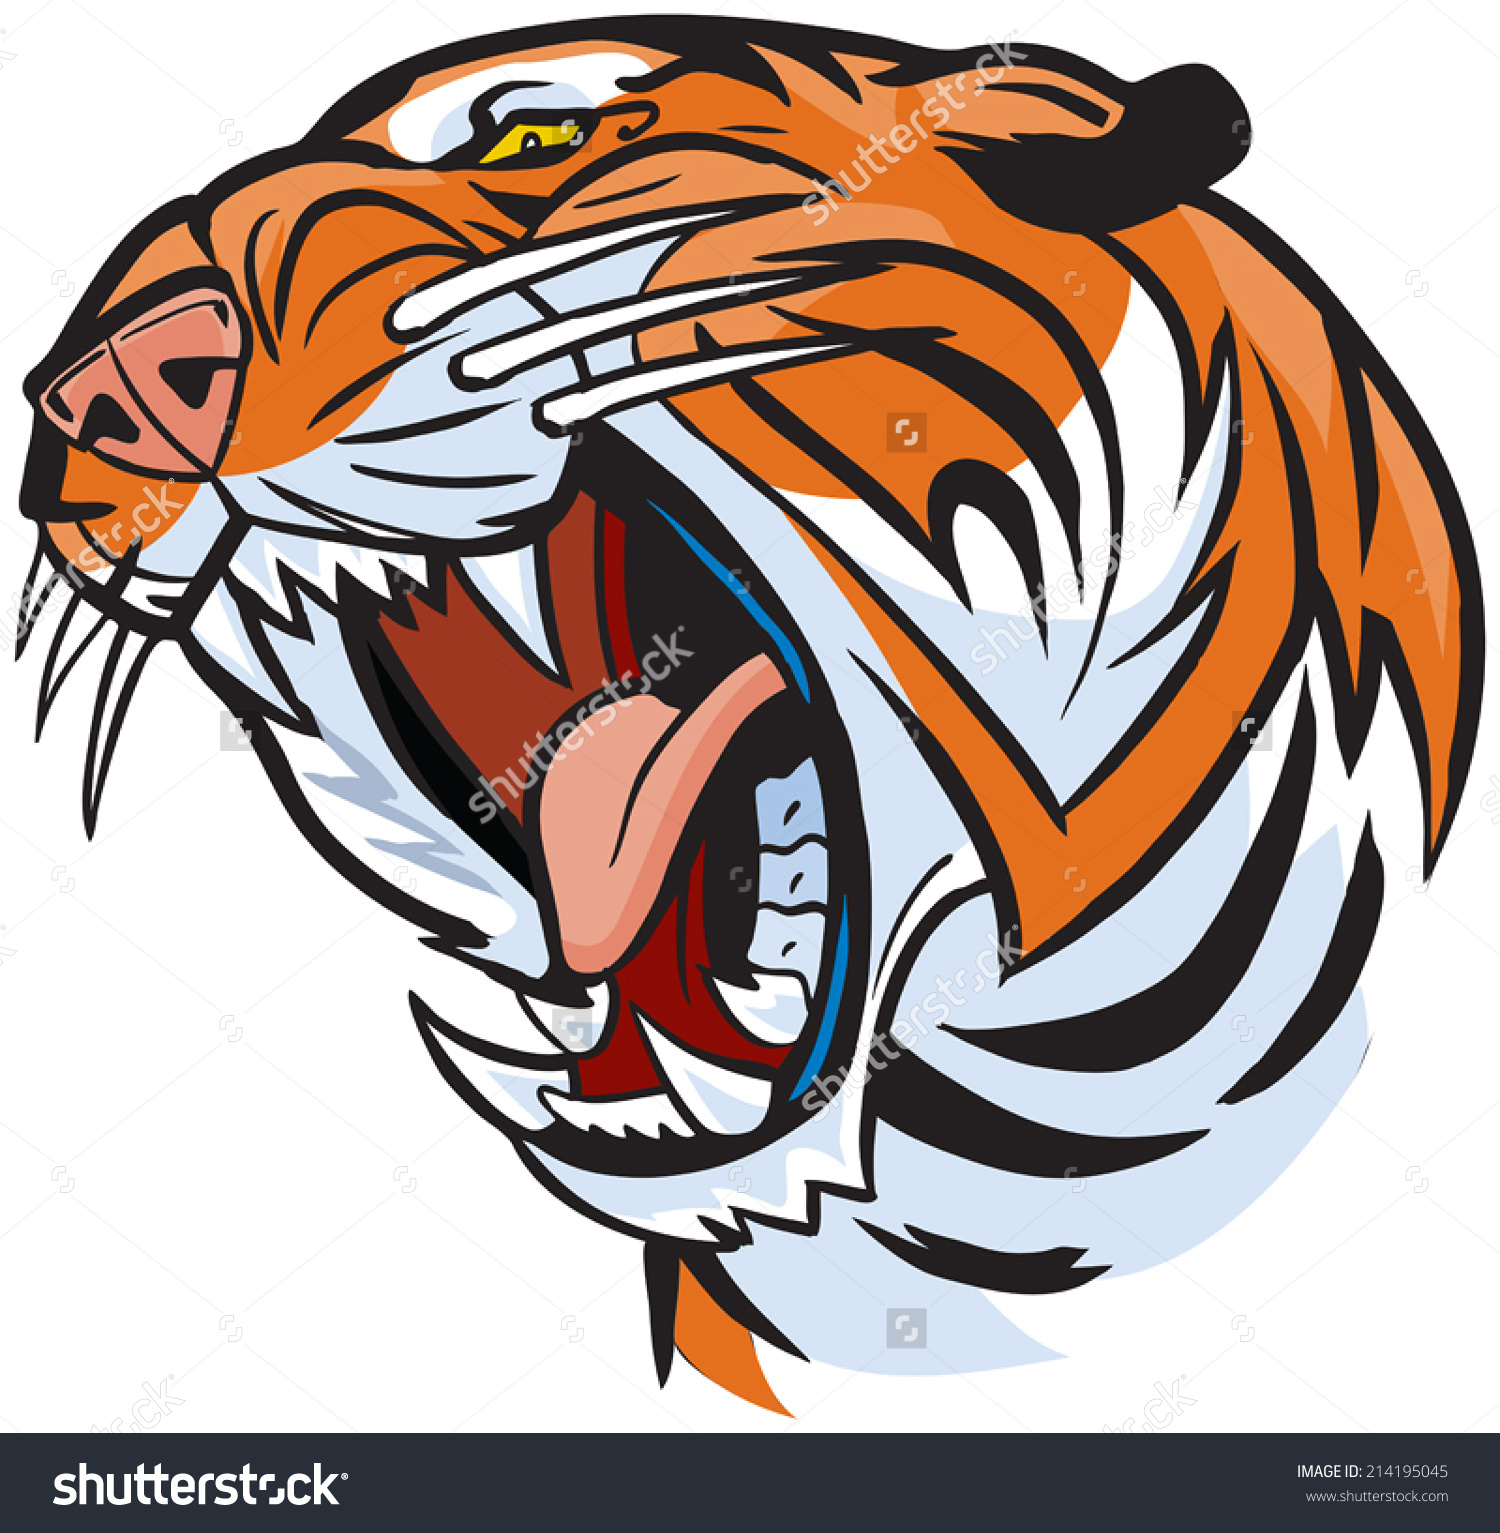 Vector Cartoon Clip Art Illustration of a roaring tiger head.